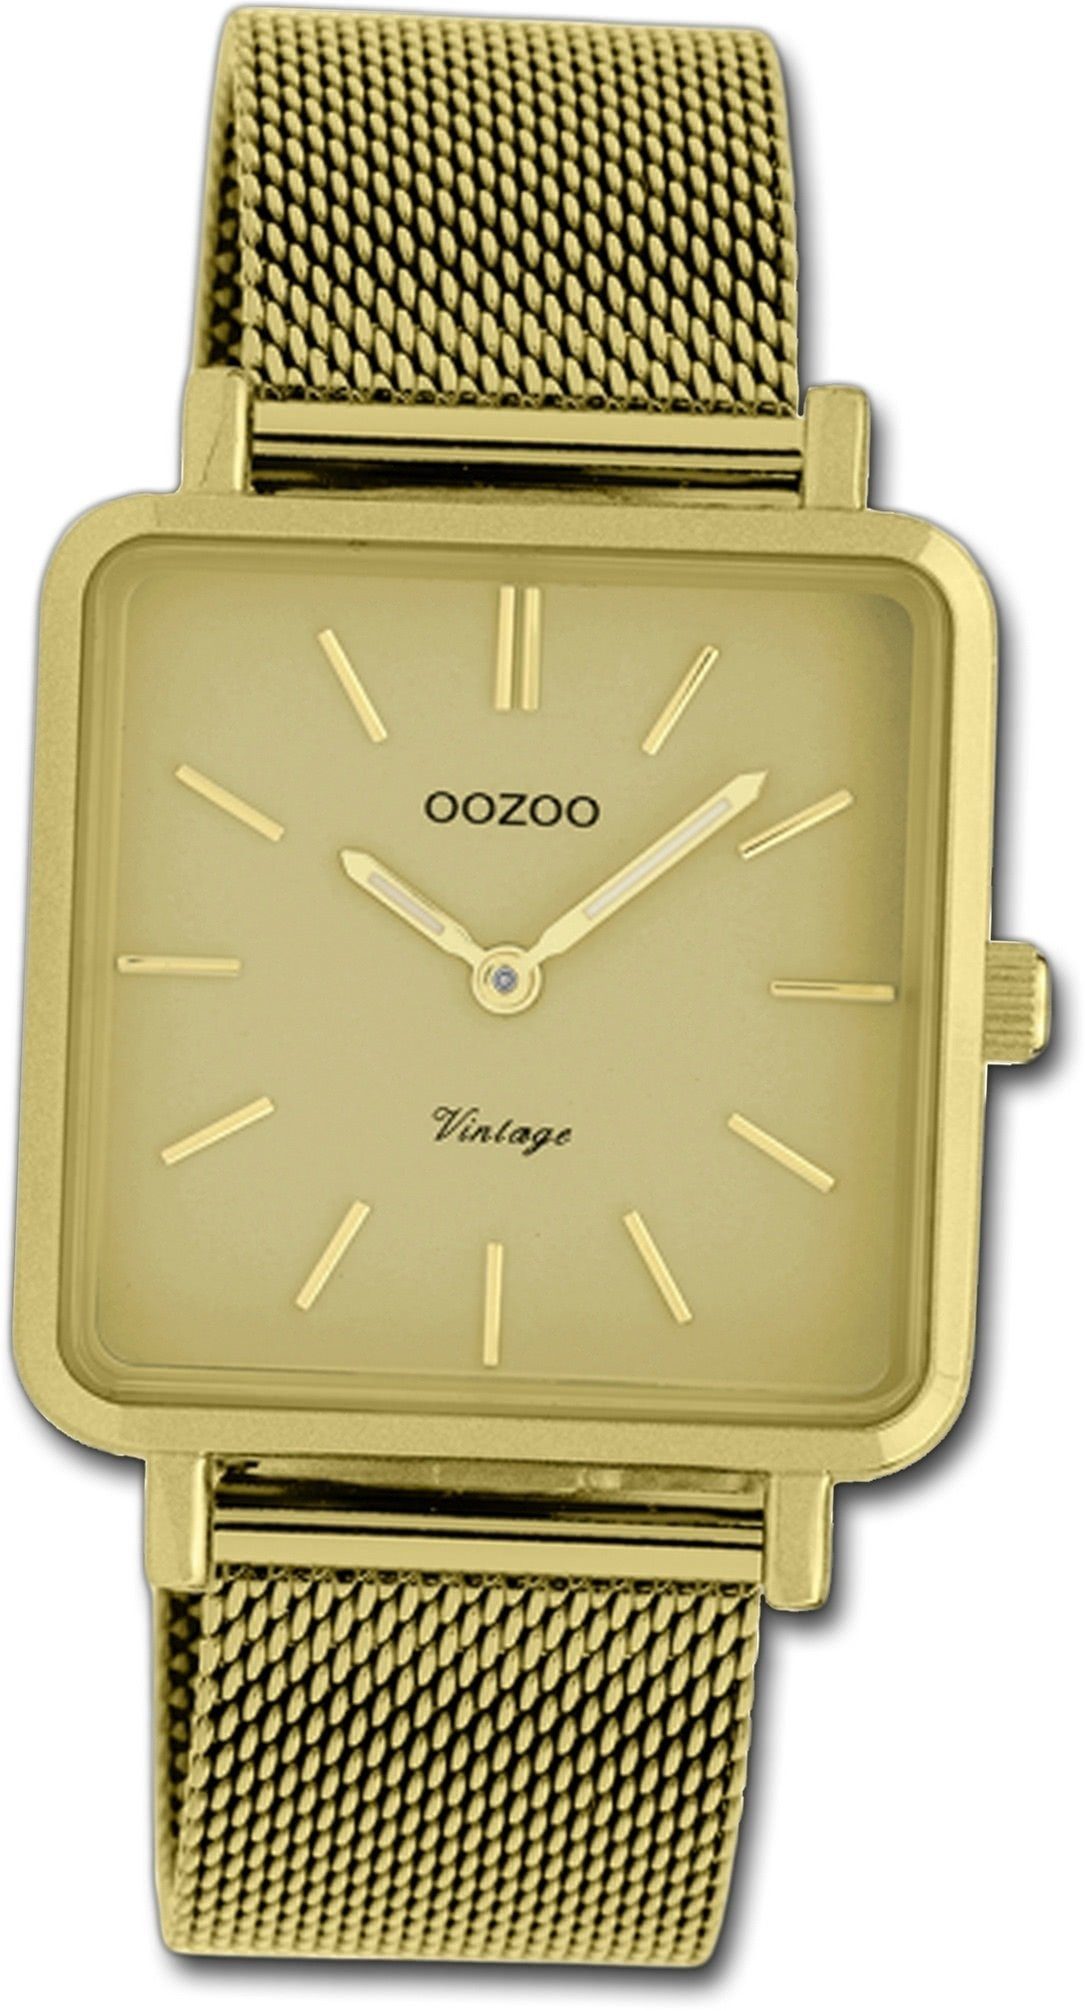 OOZOO Quarzuhr Oozoo Edelstahl Damen Uhr C20010, Damenuhr Edelstahlarmband gold, eckiges Gehäuse, klein (ca. 29mm)